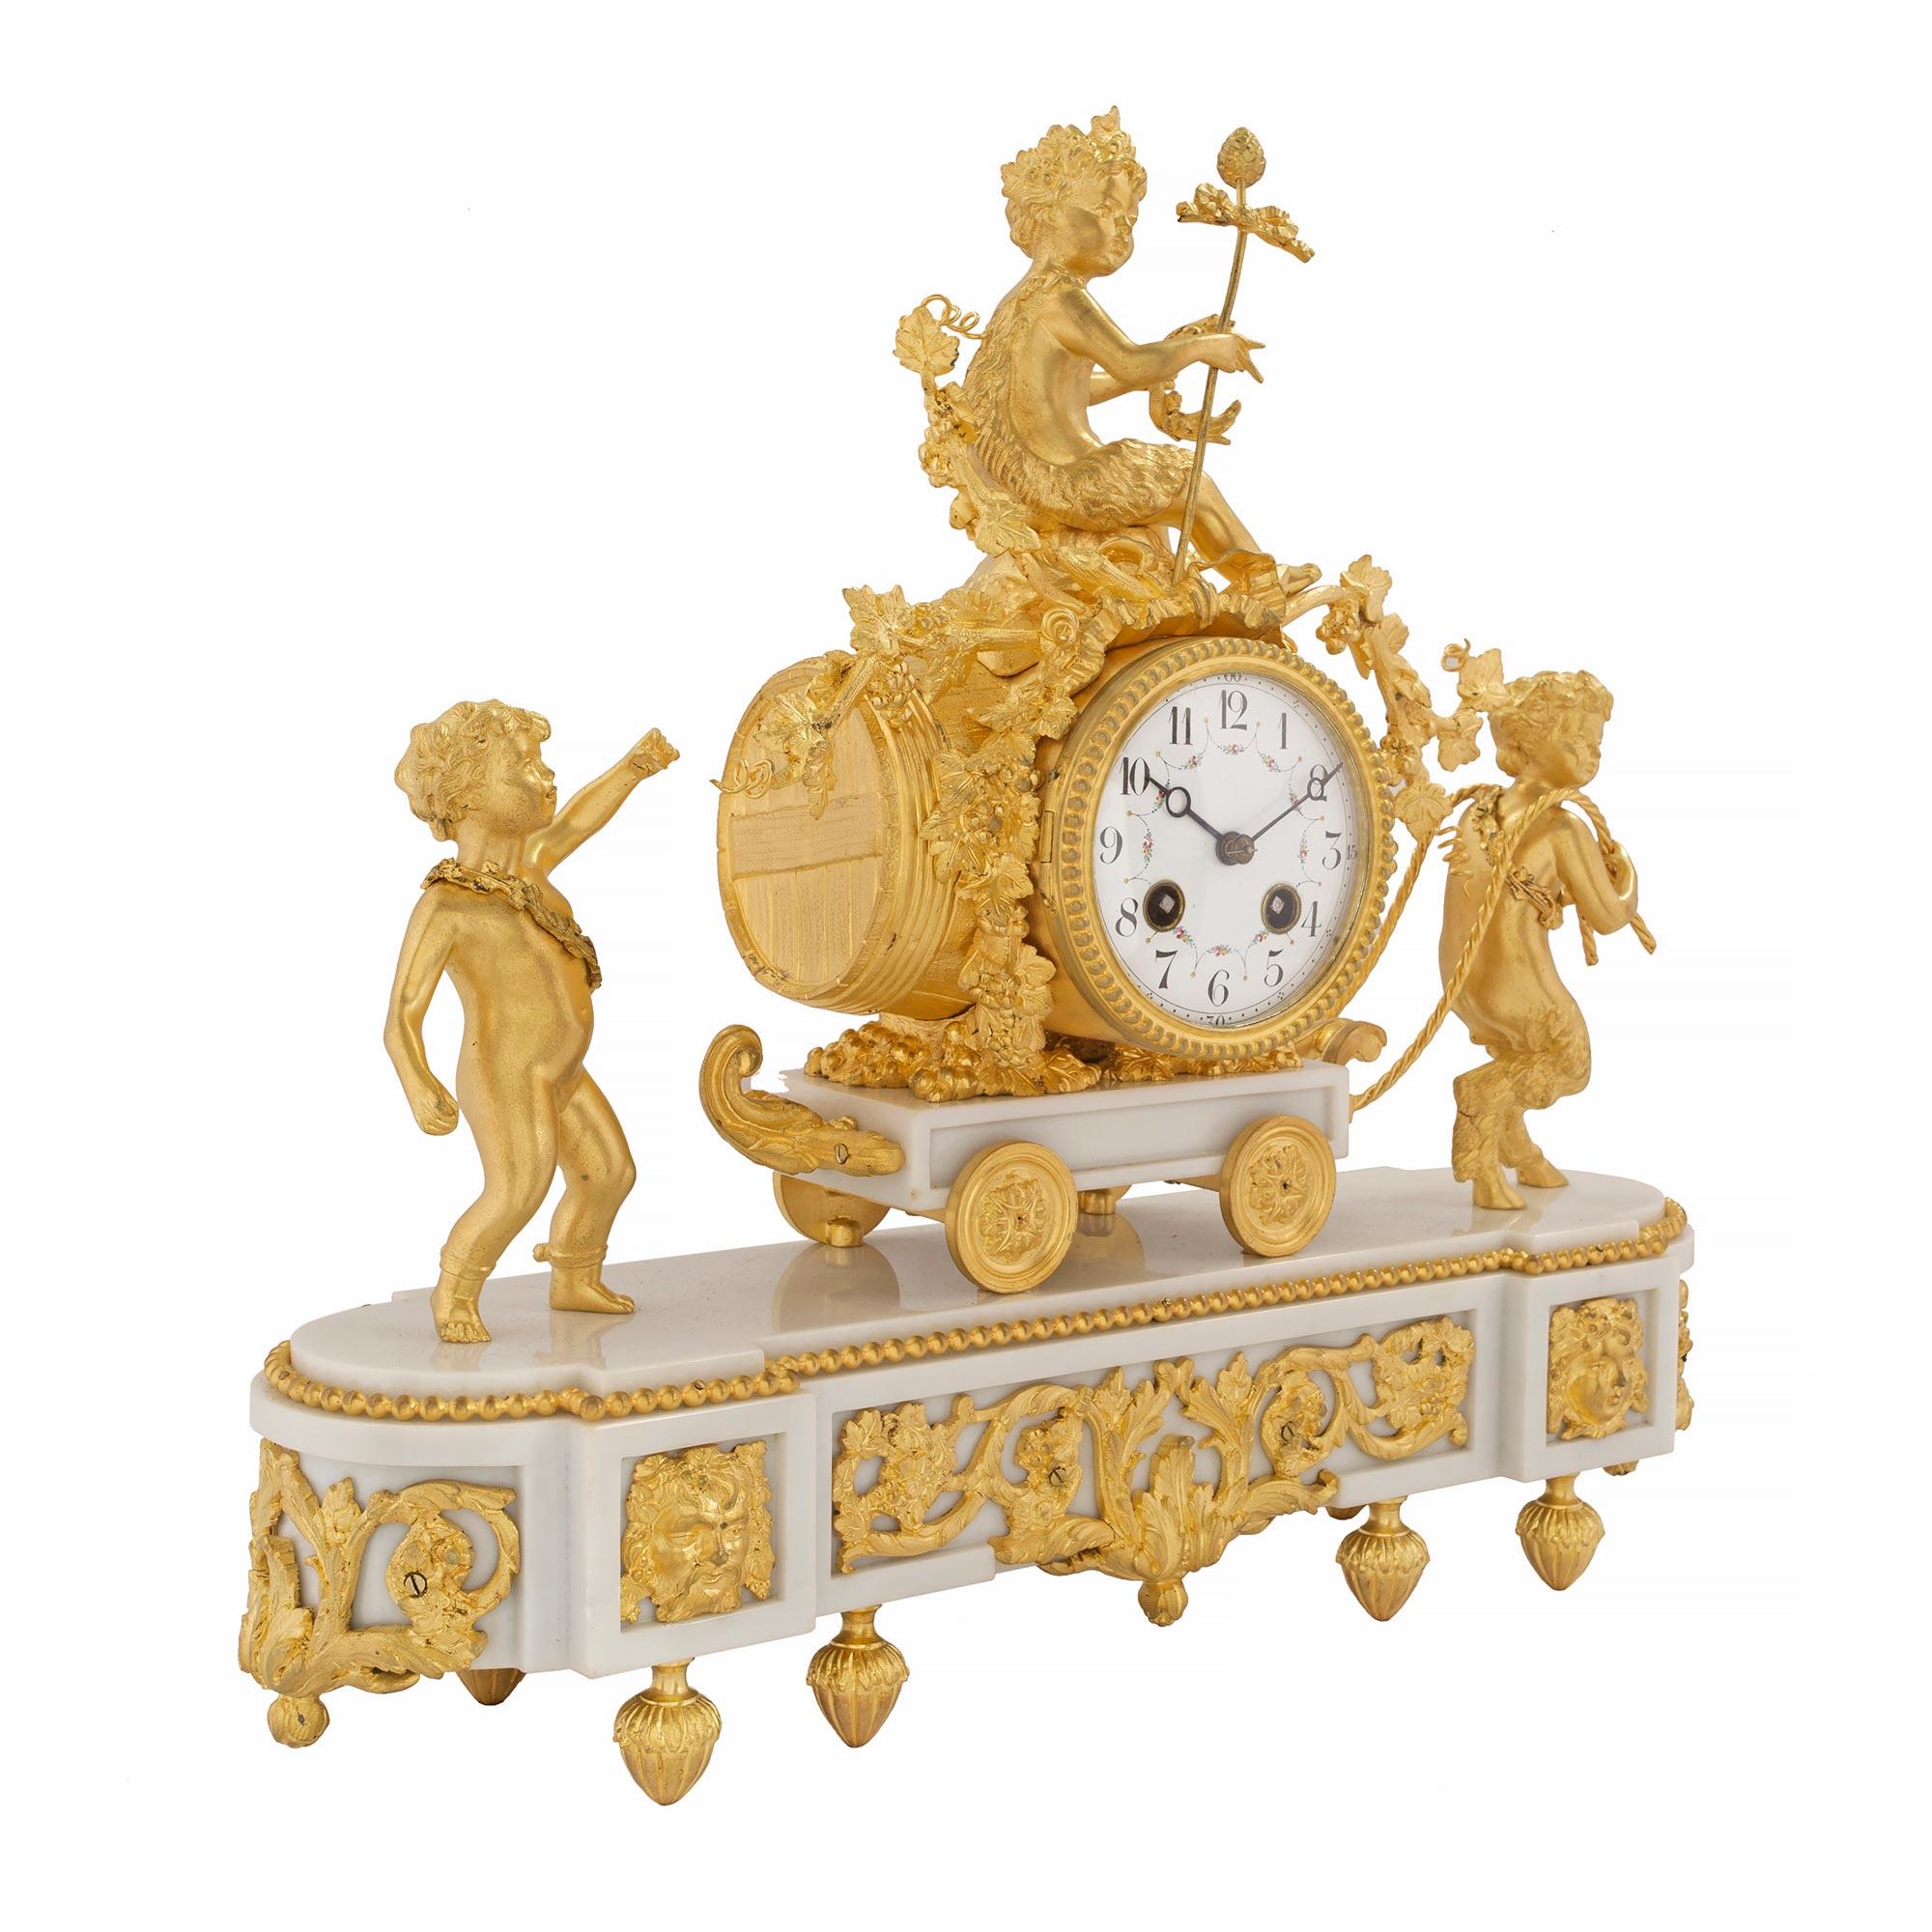 Eine elegante und qualitativ hochwertige französische Uhr aus dem 19. Jahrhundert aus weißem Carrara-Marmor und Ormolu. Die Uhr steht auf blattförmigen Topie-Füßen unter dem länglichen Sockel aus weißem Carrara-Marmor. Der Sockel zeigt eine fein